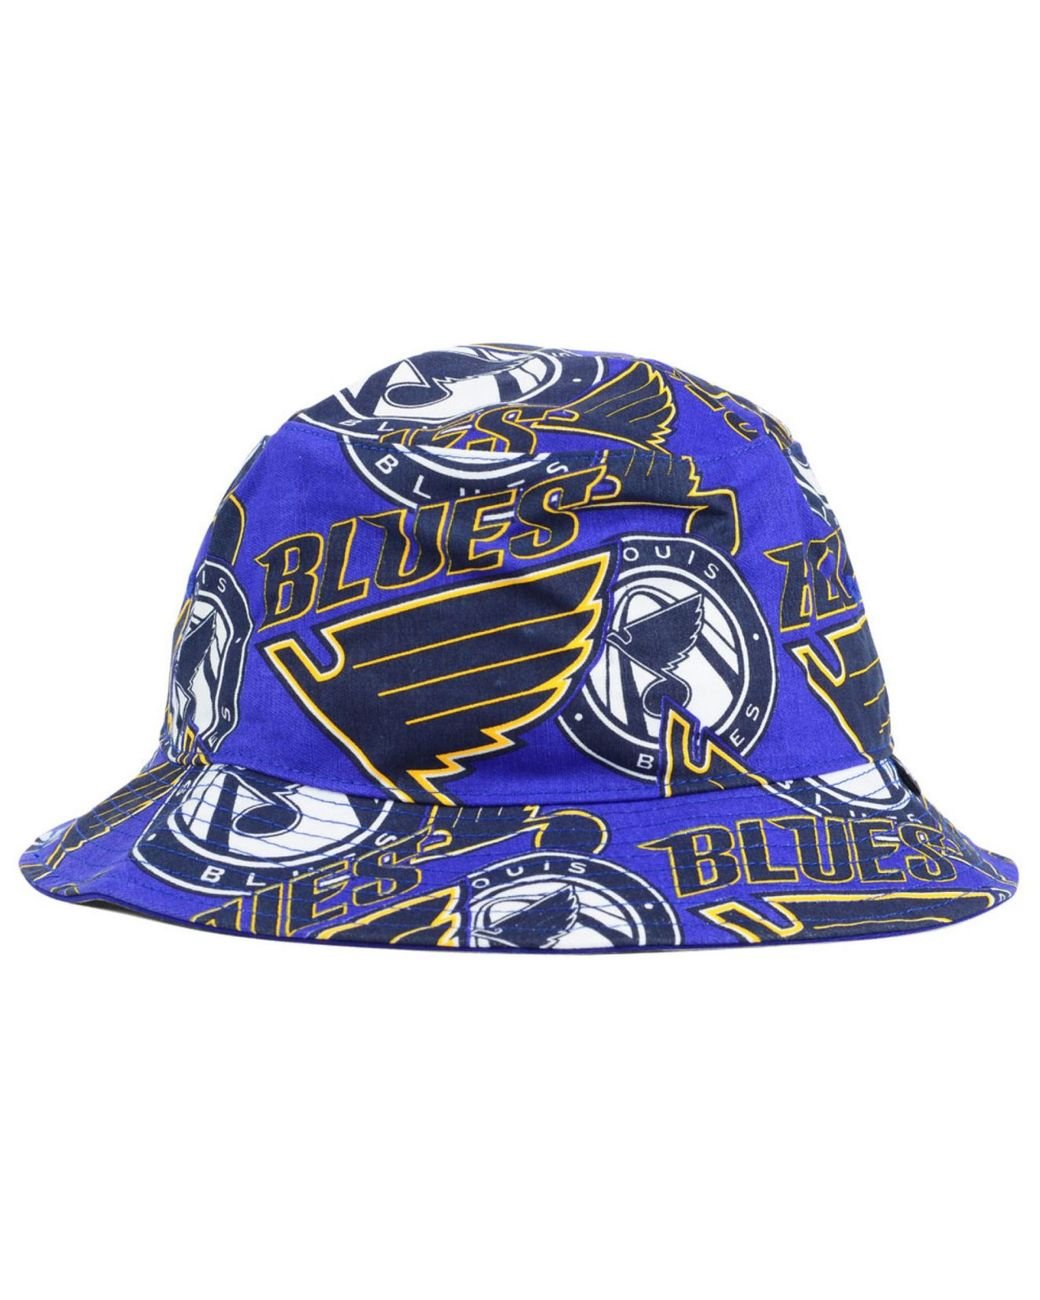 St. Louis Blues '47 Wycliff Contender Flex Hat - Charcoal